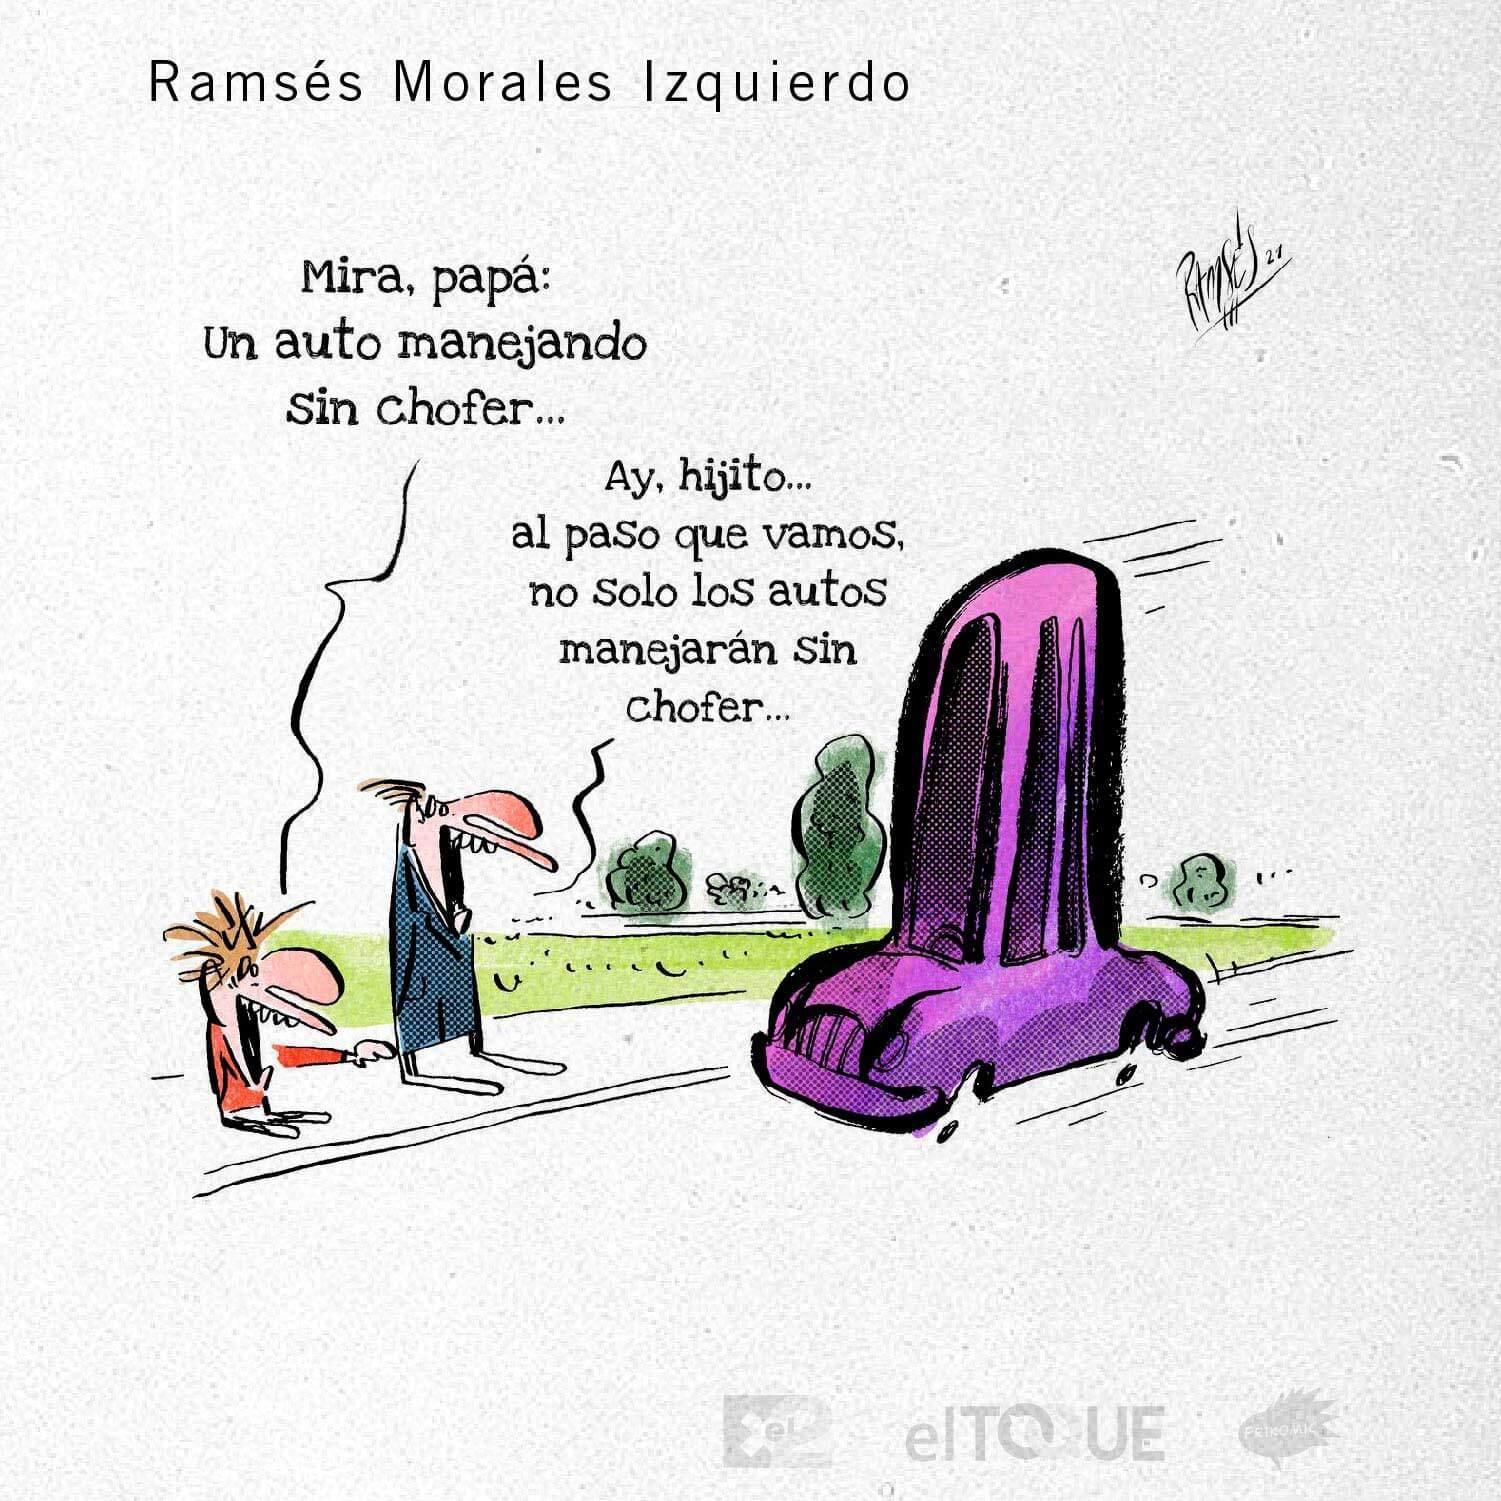 21-02-Morales-Ramses-PROHIBICIONES-SECTOR-PRIVADO-CUBA.jpg